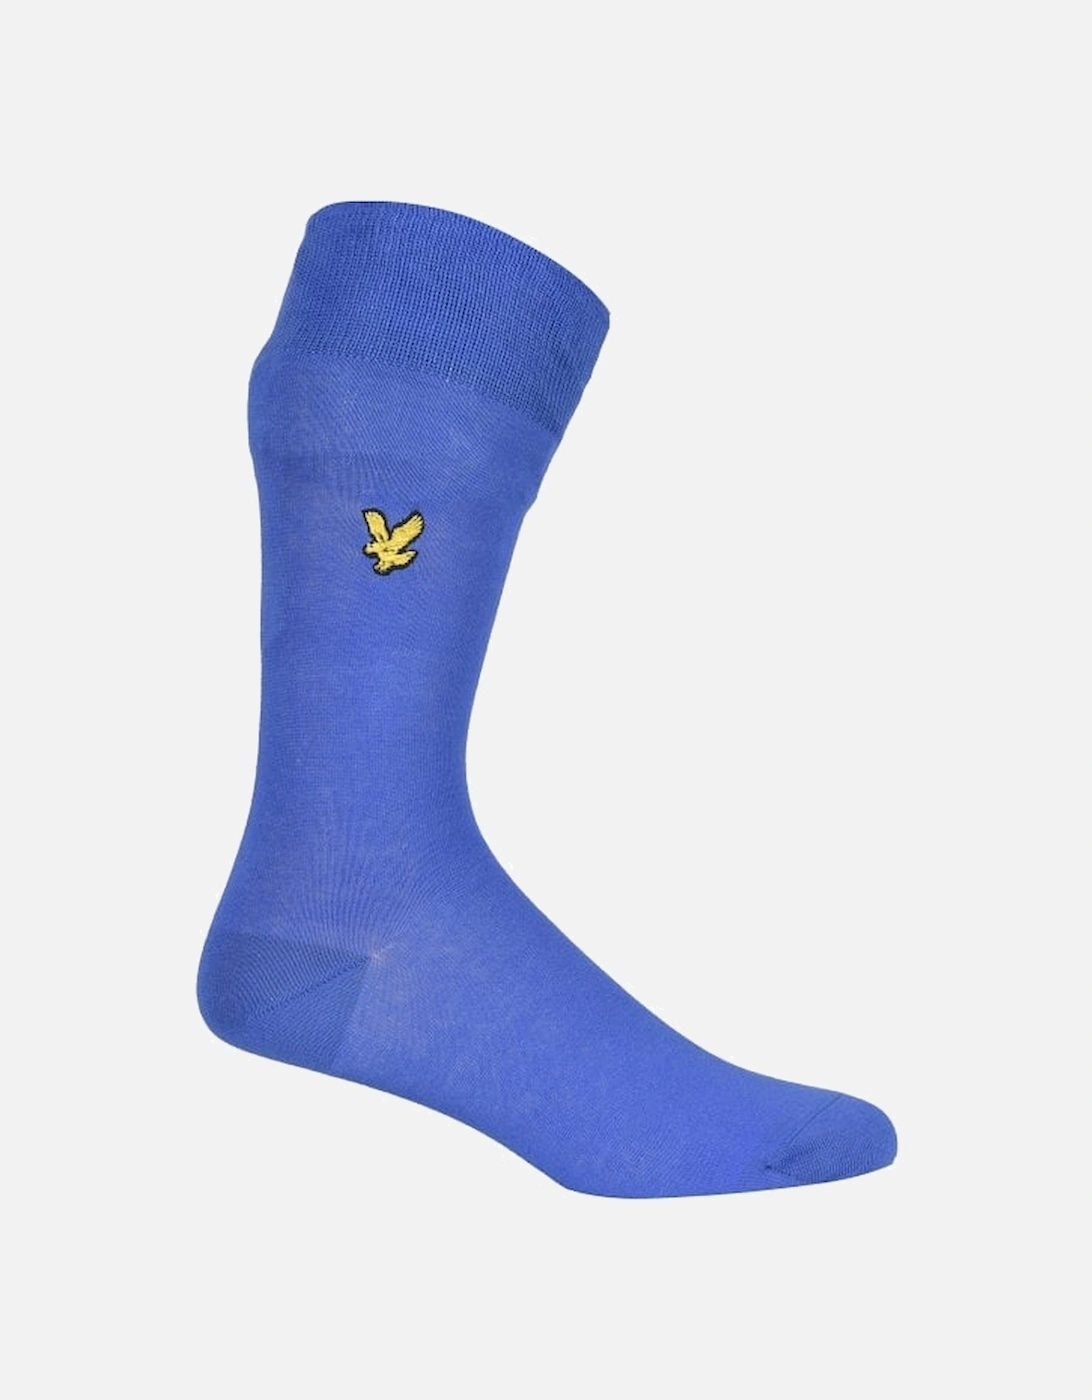 3-Pack Golden Eagle Logo Socks, Navy/Grey/Blue